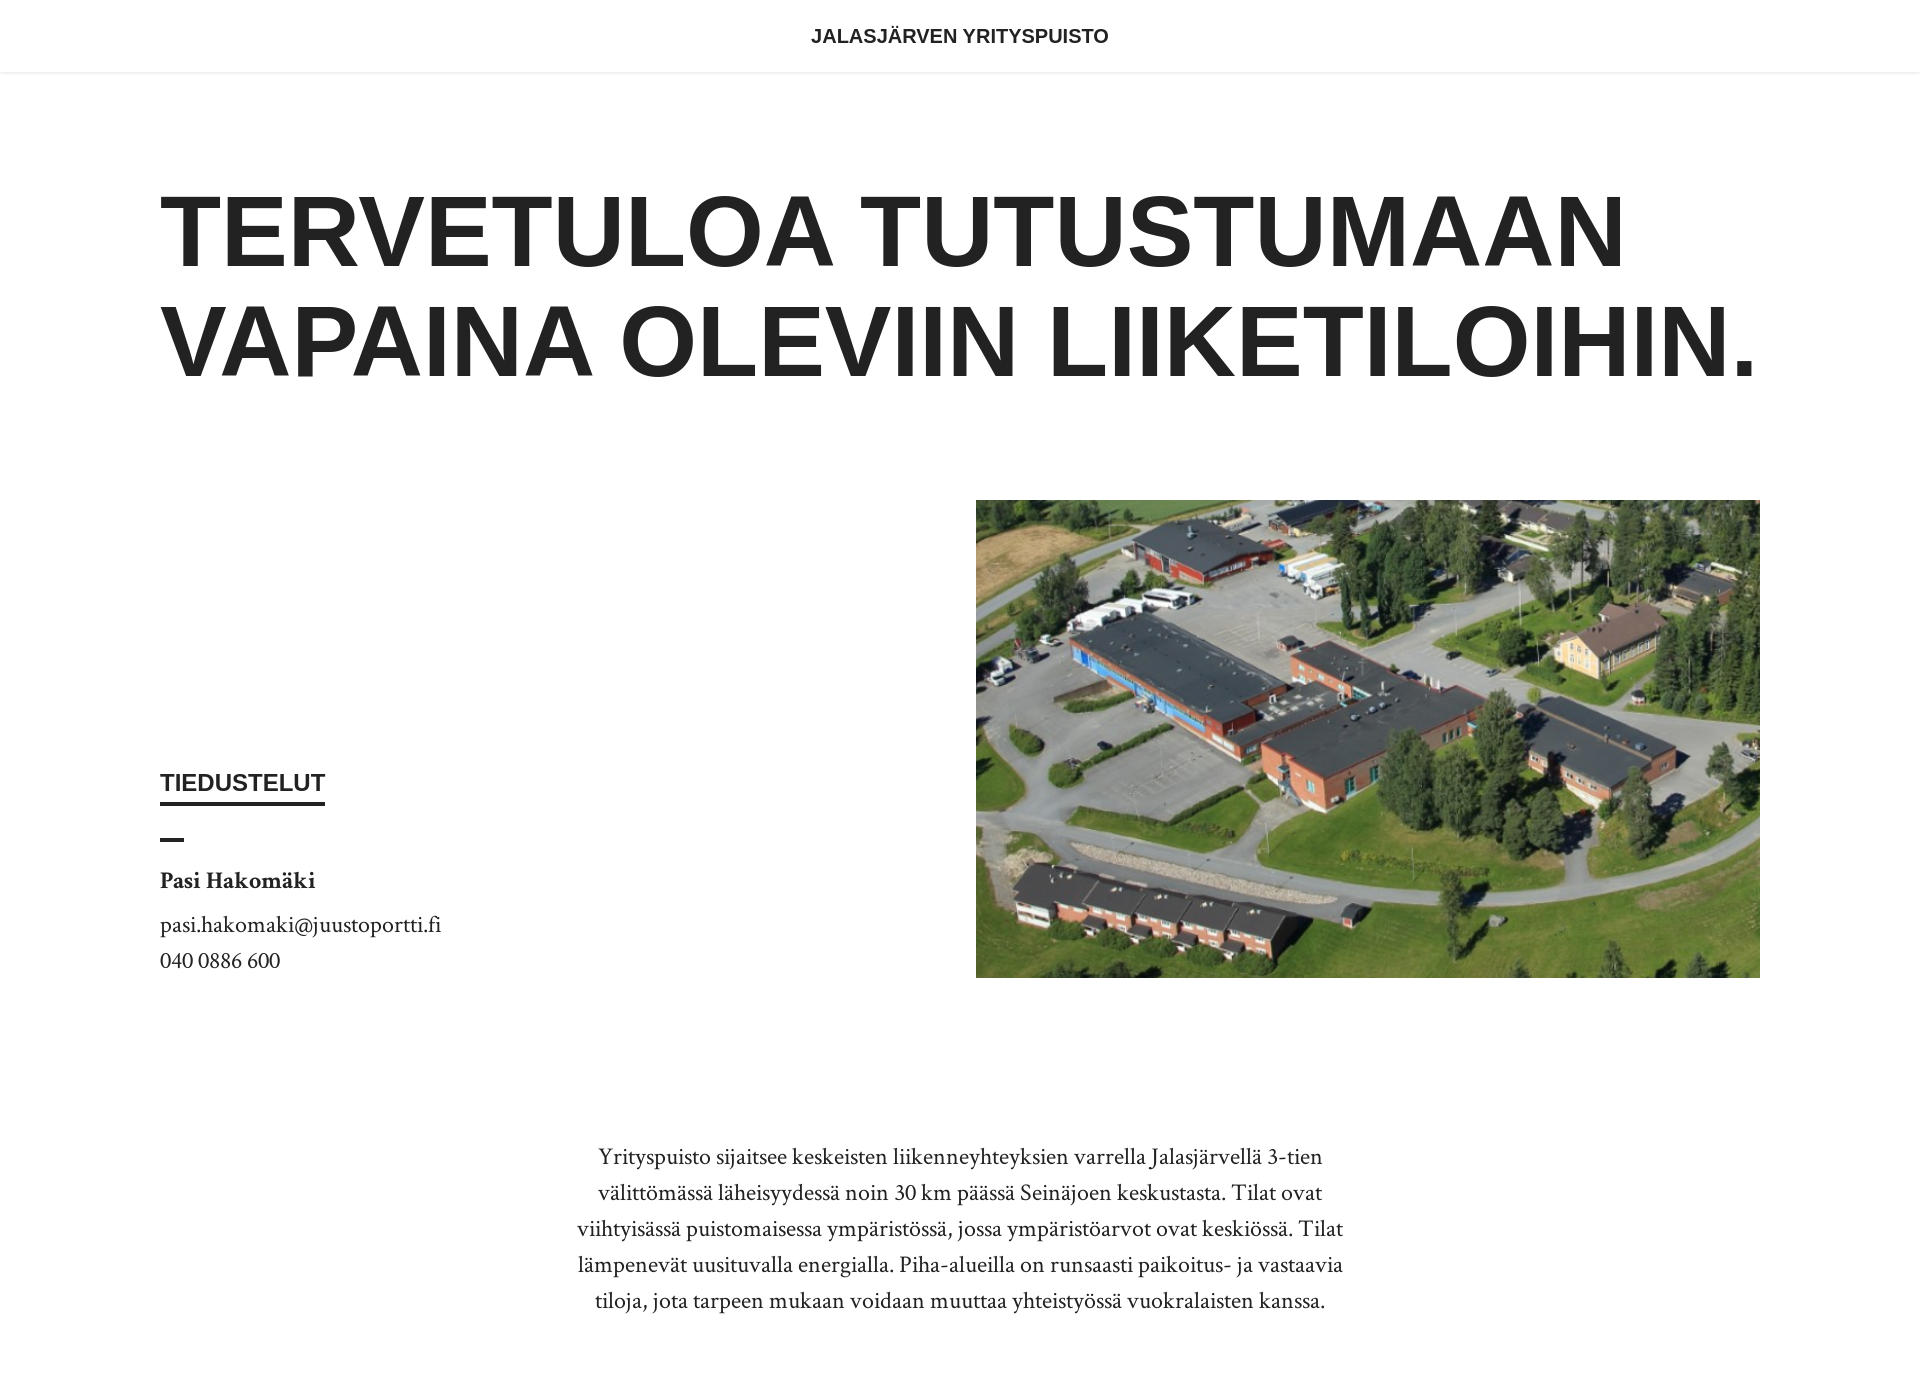 Näyttökuva jalasjarvenyrityspuisto.fi